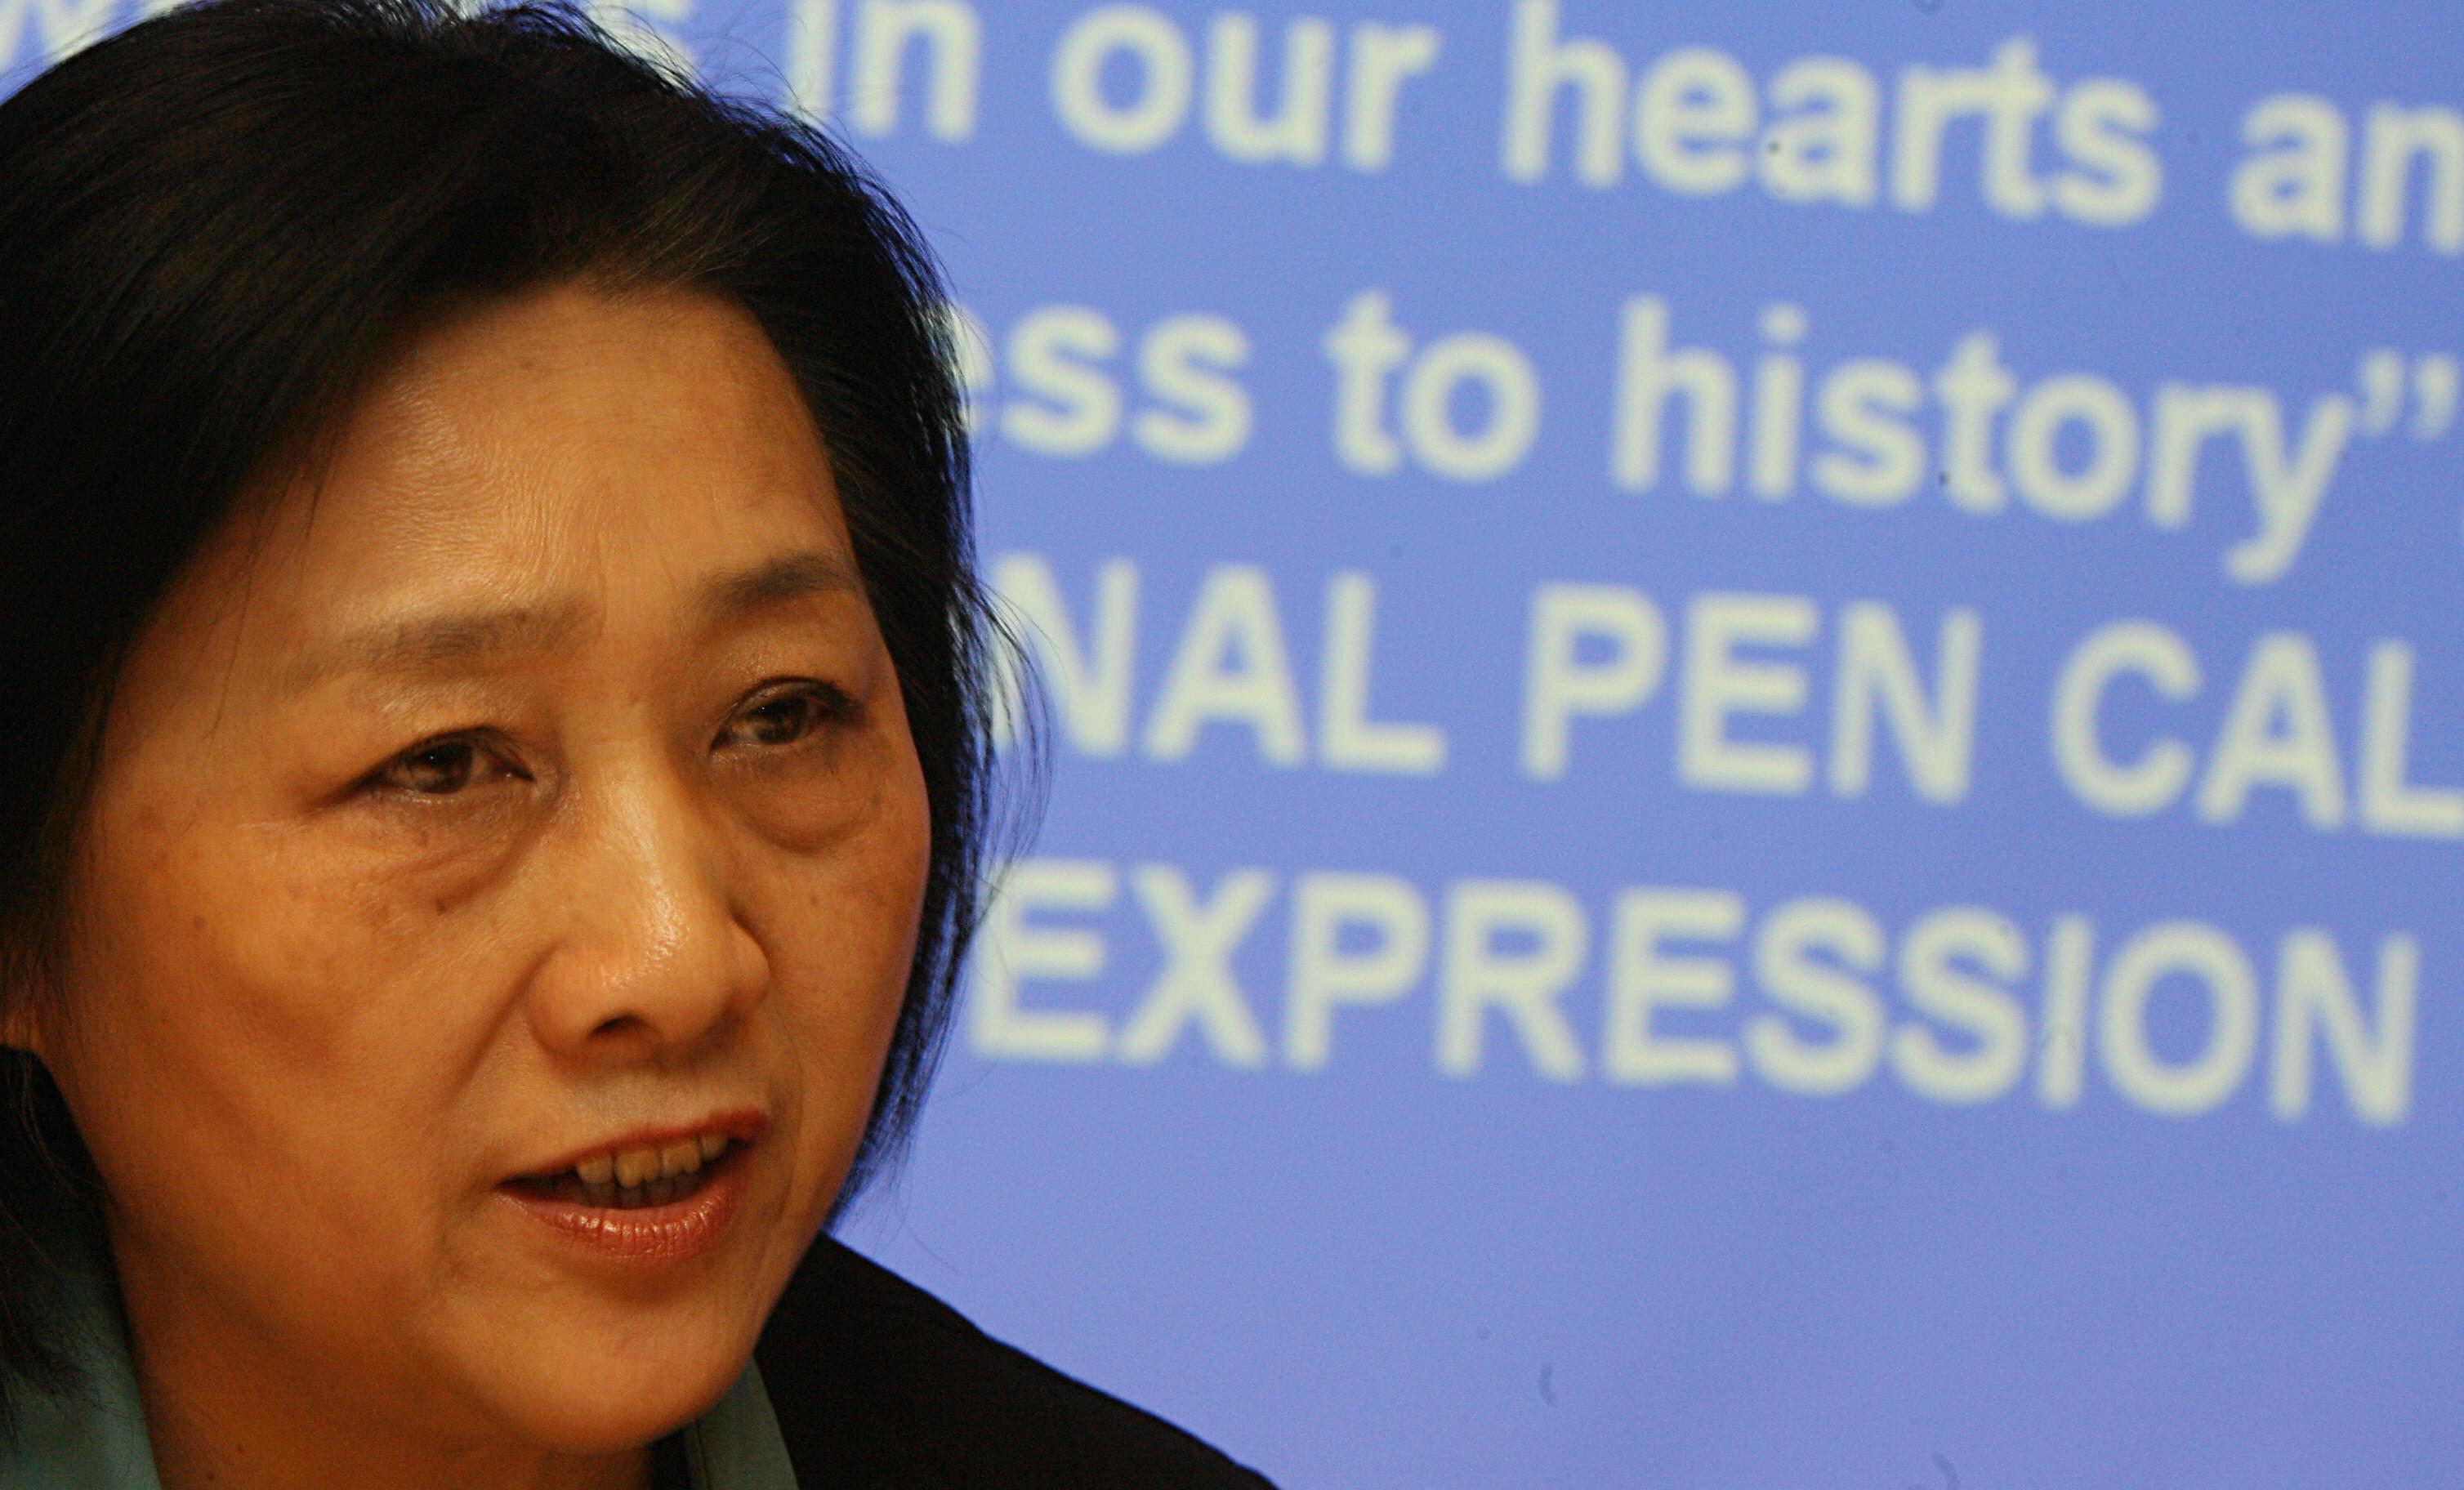 Den fängslade kinesiska journalisten Gao Yu rapporteras ha svåra hjärtproblem och andra tillstånd som kräver vård. Nu vill hennes advokat att hon släpps av medicinska skäl. (Foto: Mike Clarke /AFP/Getty Images)